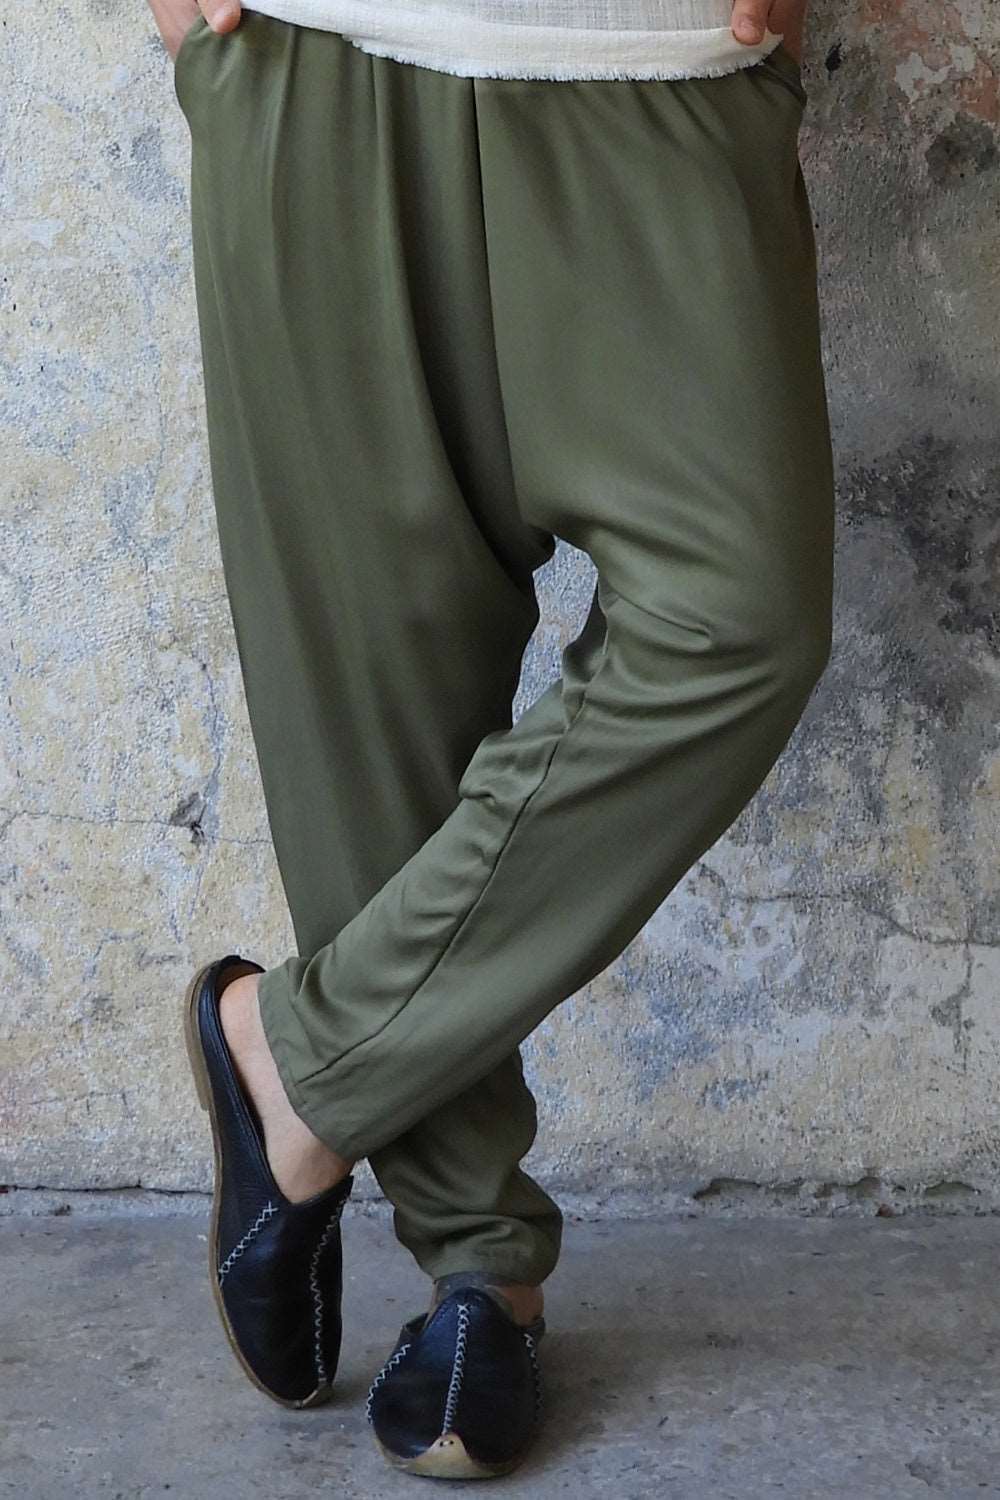 Odana's | BASIC Men's Harem Pants (Dark Cream, Army Green) Army Green | Harem Pants | Sustainable Fashion